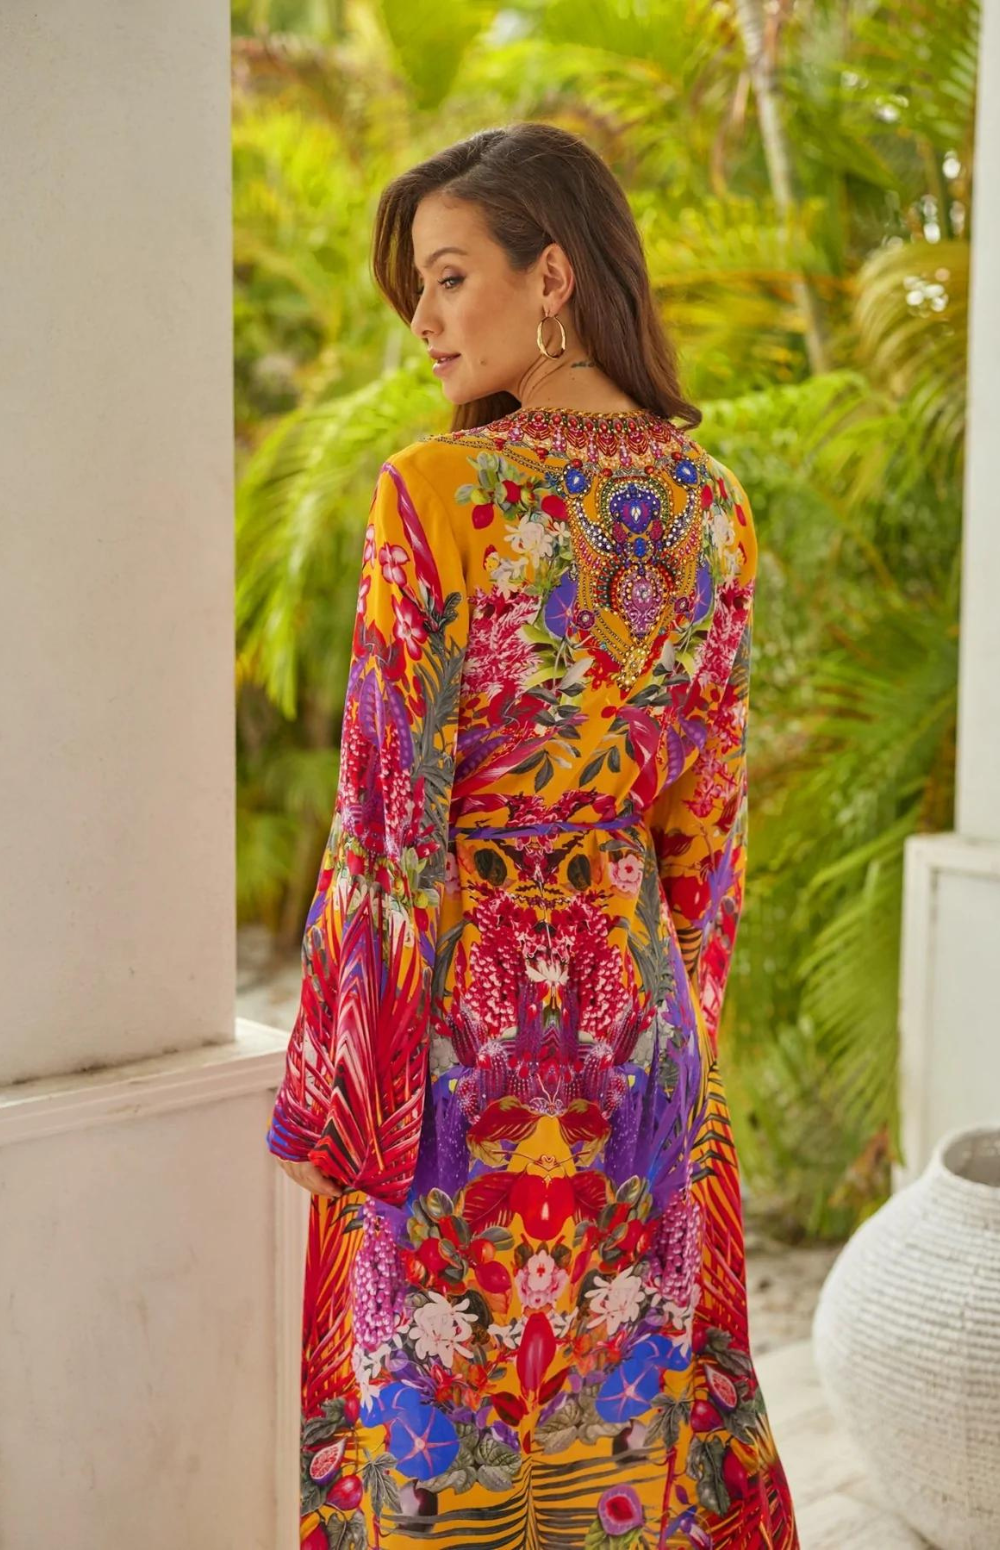 Czarina - 'Tropical Sunset' Wrap Dress